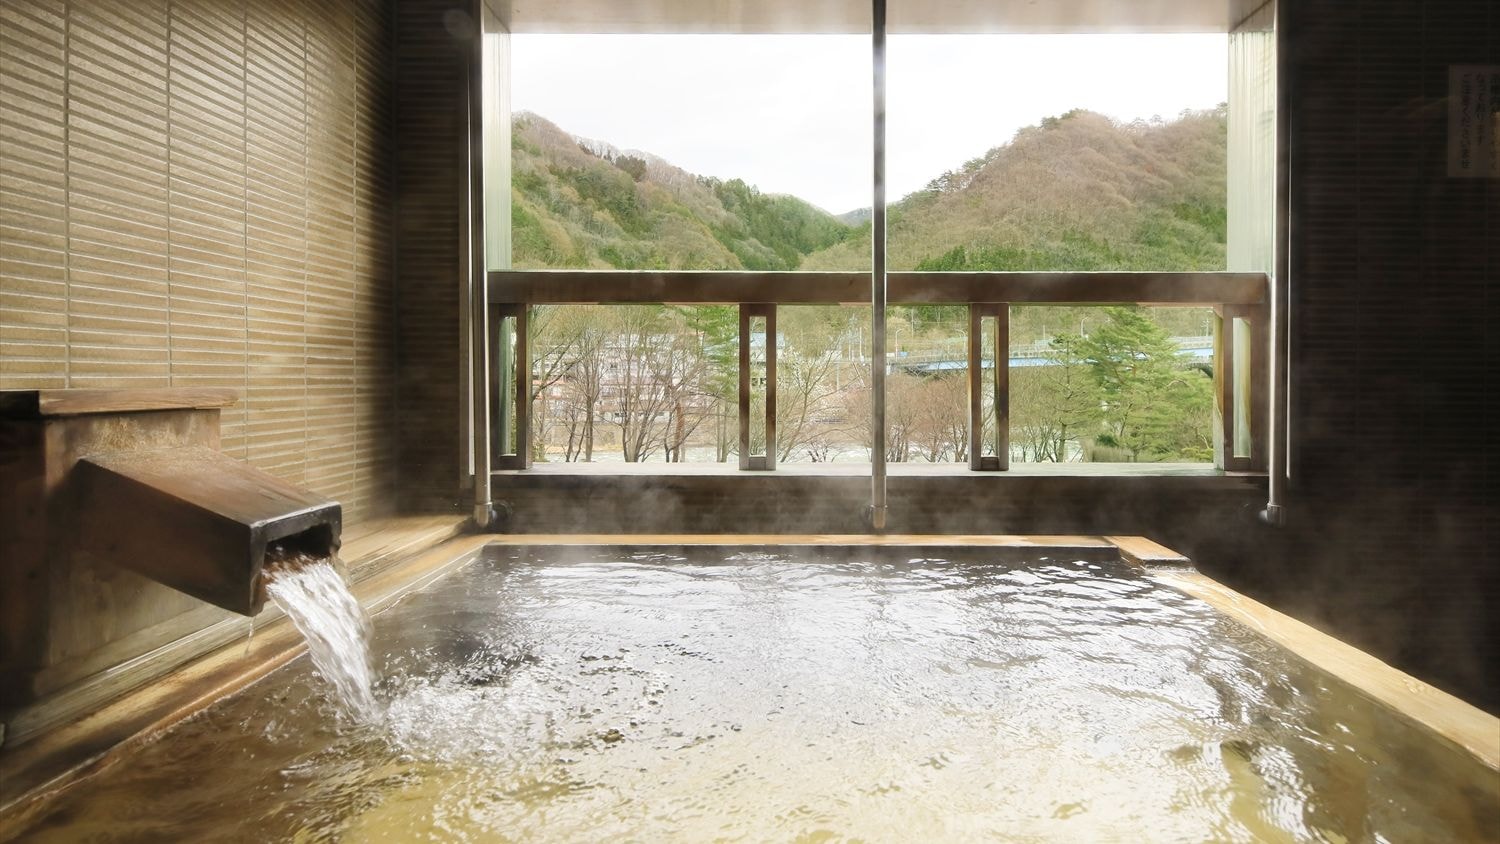 [ห้องพักพร้อมห้องอาบน้ำแบบเปิดโล่ง, ปลอดบุหรี่] บ่อน้ำพุร้อนธรรมชาติ 100% ห้องแบบญี่ปุ่นผสมตะวันตกพร้อมที่อาบน้ำแบบเปิดโล่ง